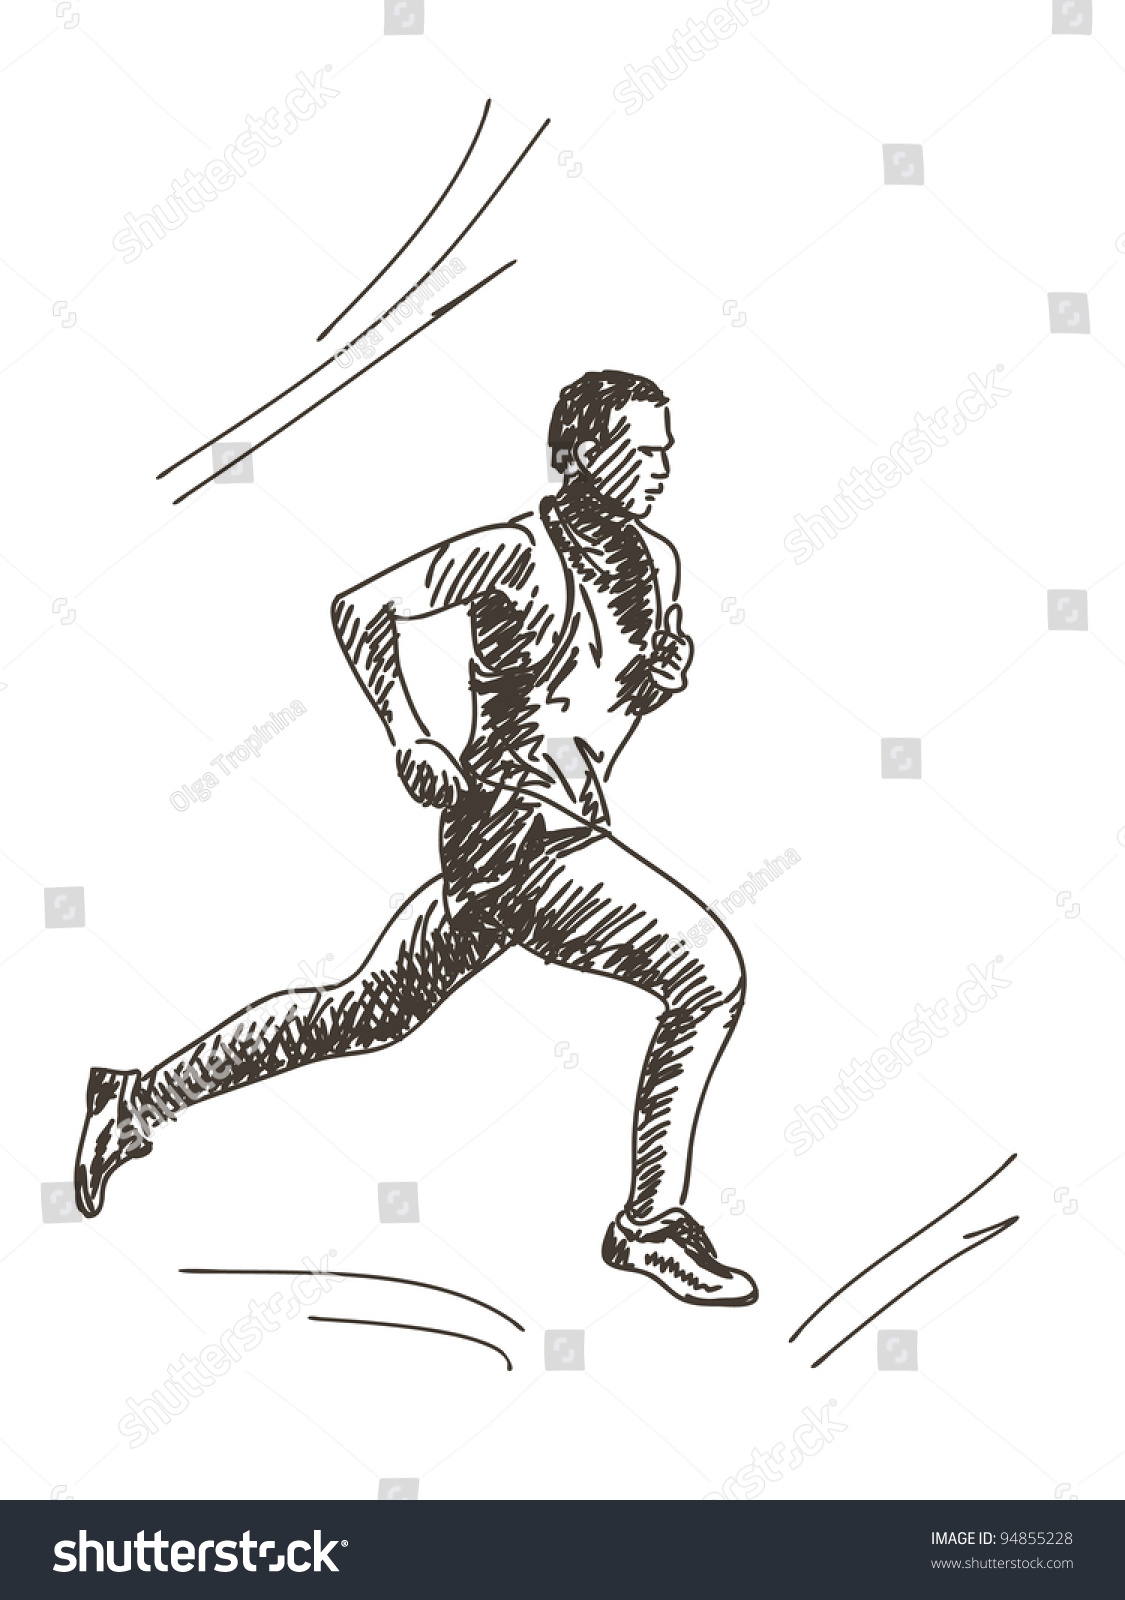 跑步教学：跑步的三种落地方式 - 哔哩哔哩